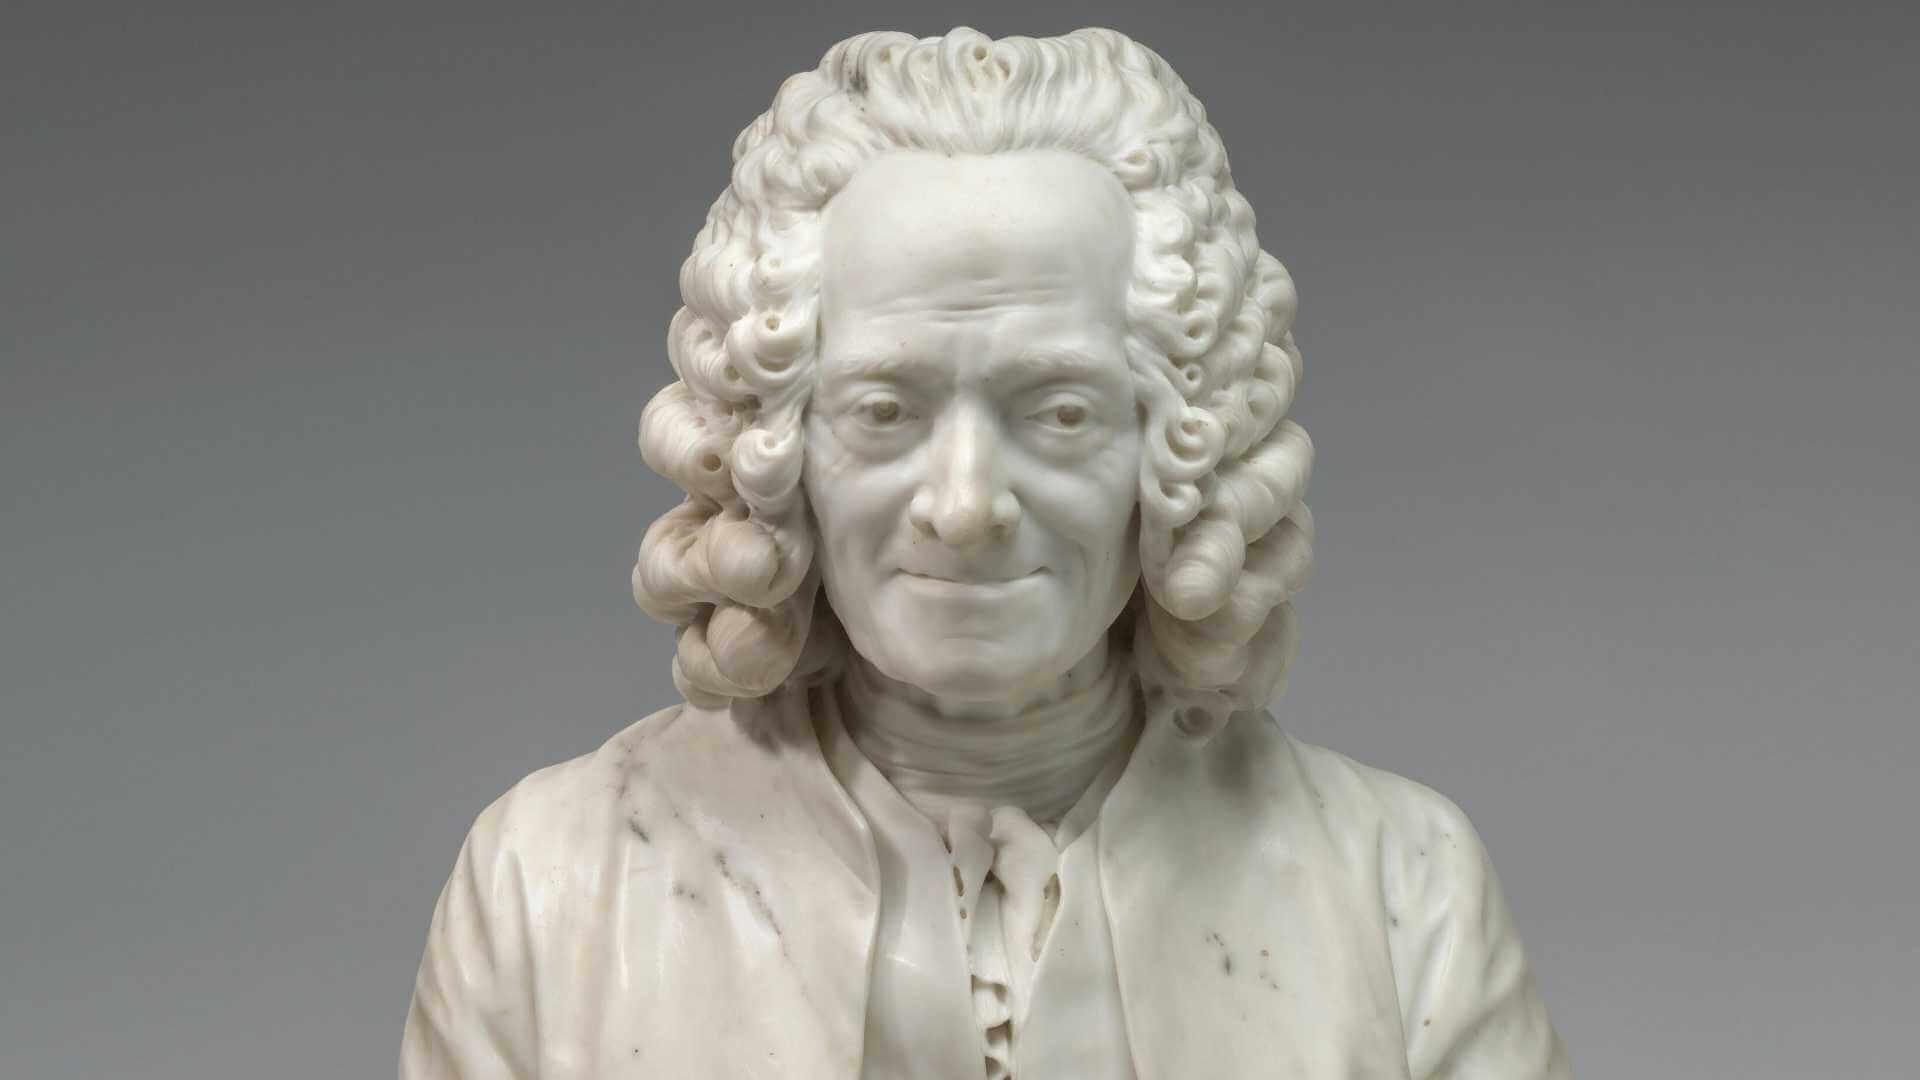 Büste des französischen Schriftstellers und Philosophen Voltaire, der von November 1694 bis Mai 1778 lebte